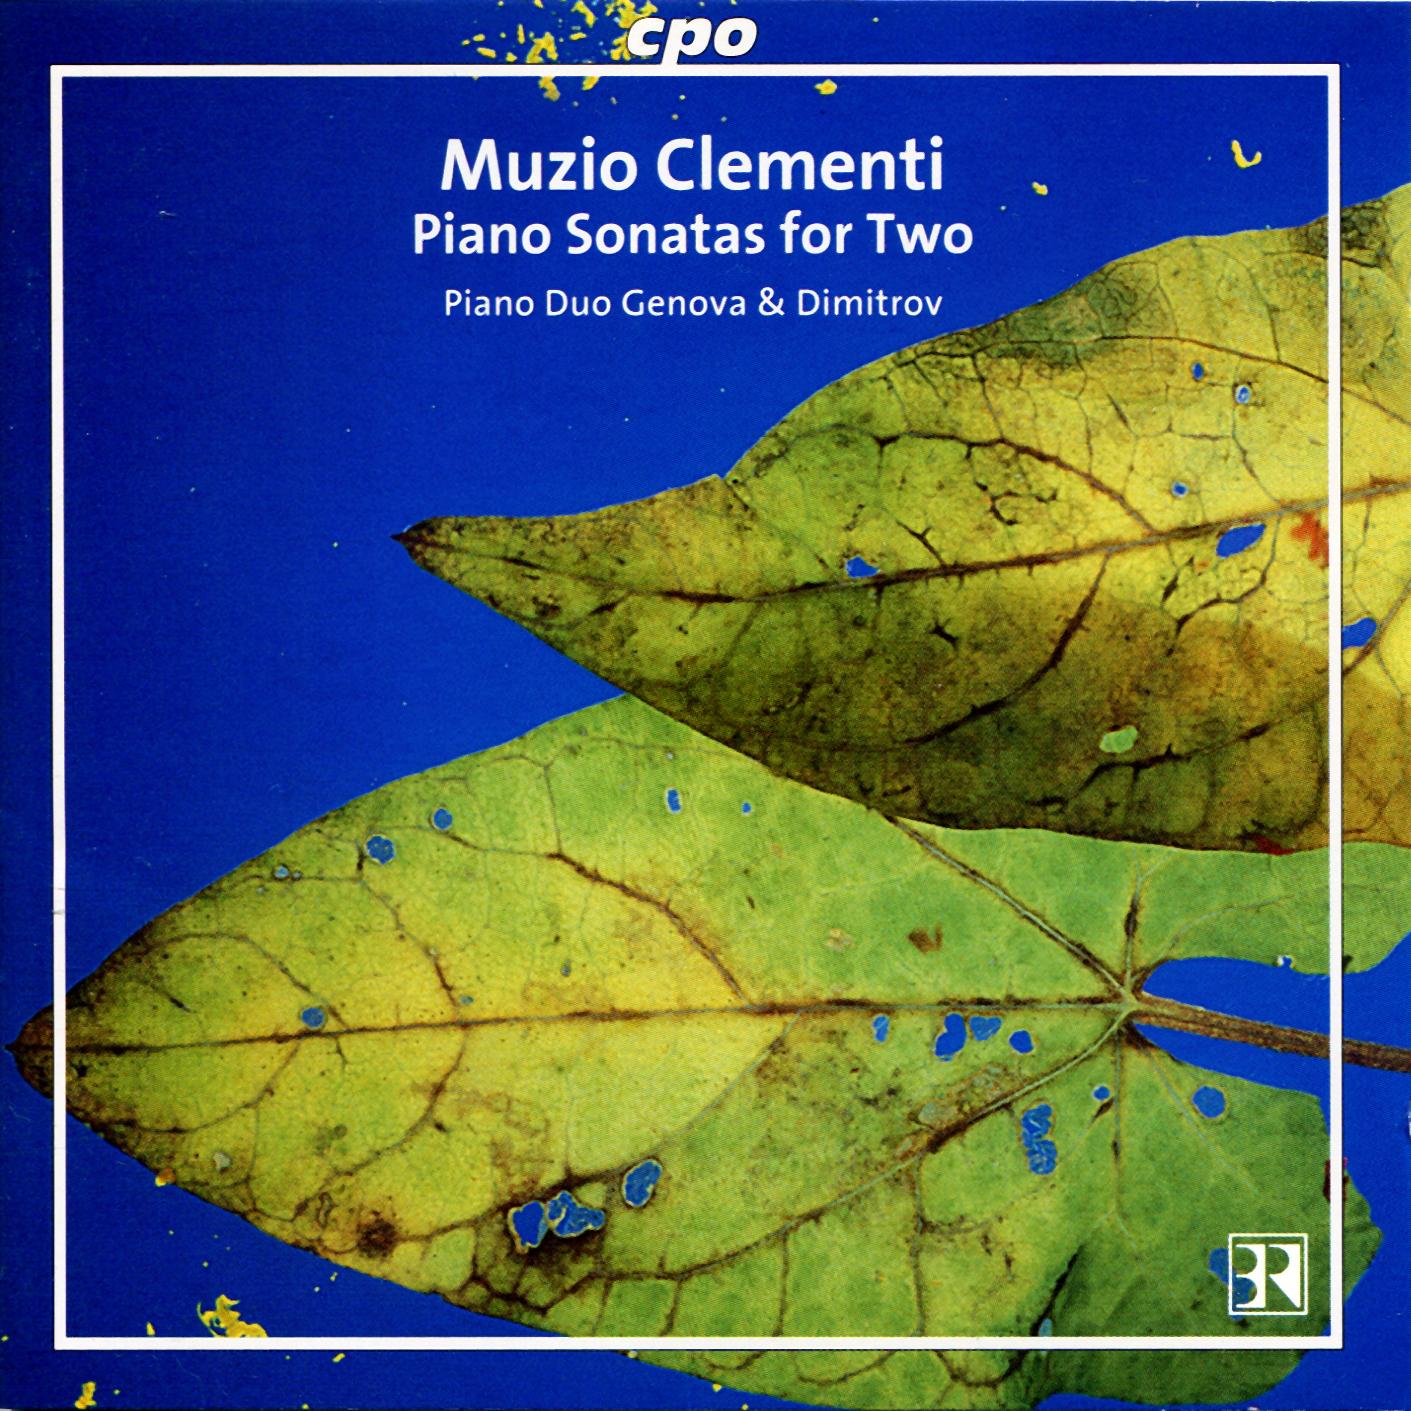 Muzio Clementi • Klaviersonaten für zwei (cpo 999 935-2) |Cover